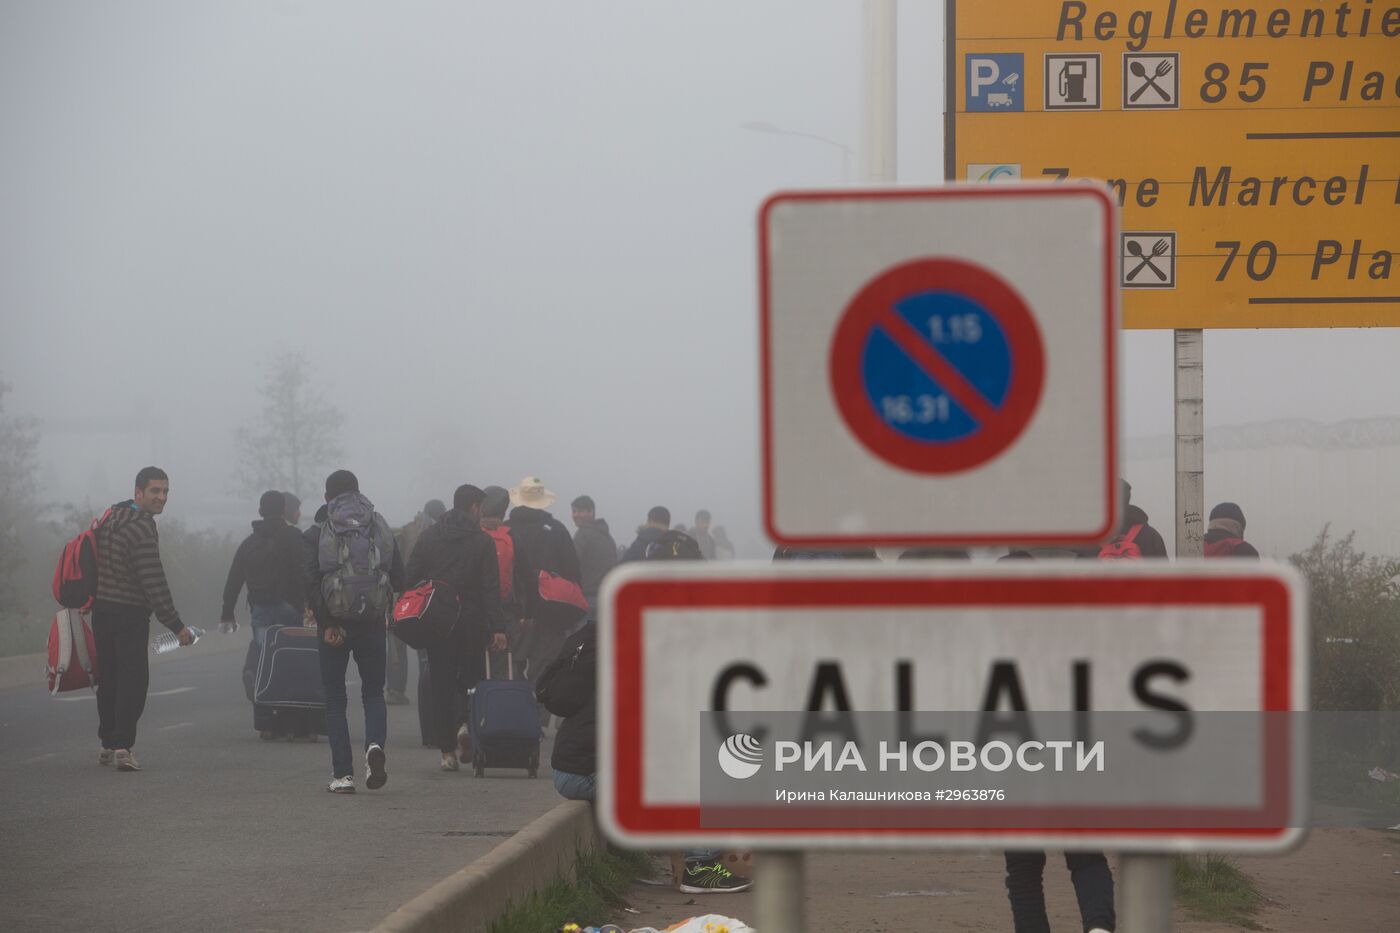 Продолжается расселение стихийного лагеря беженцев в Кале во Франции